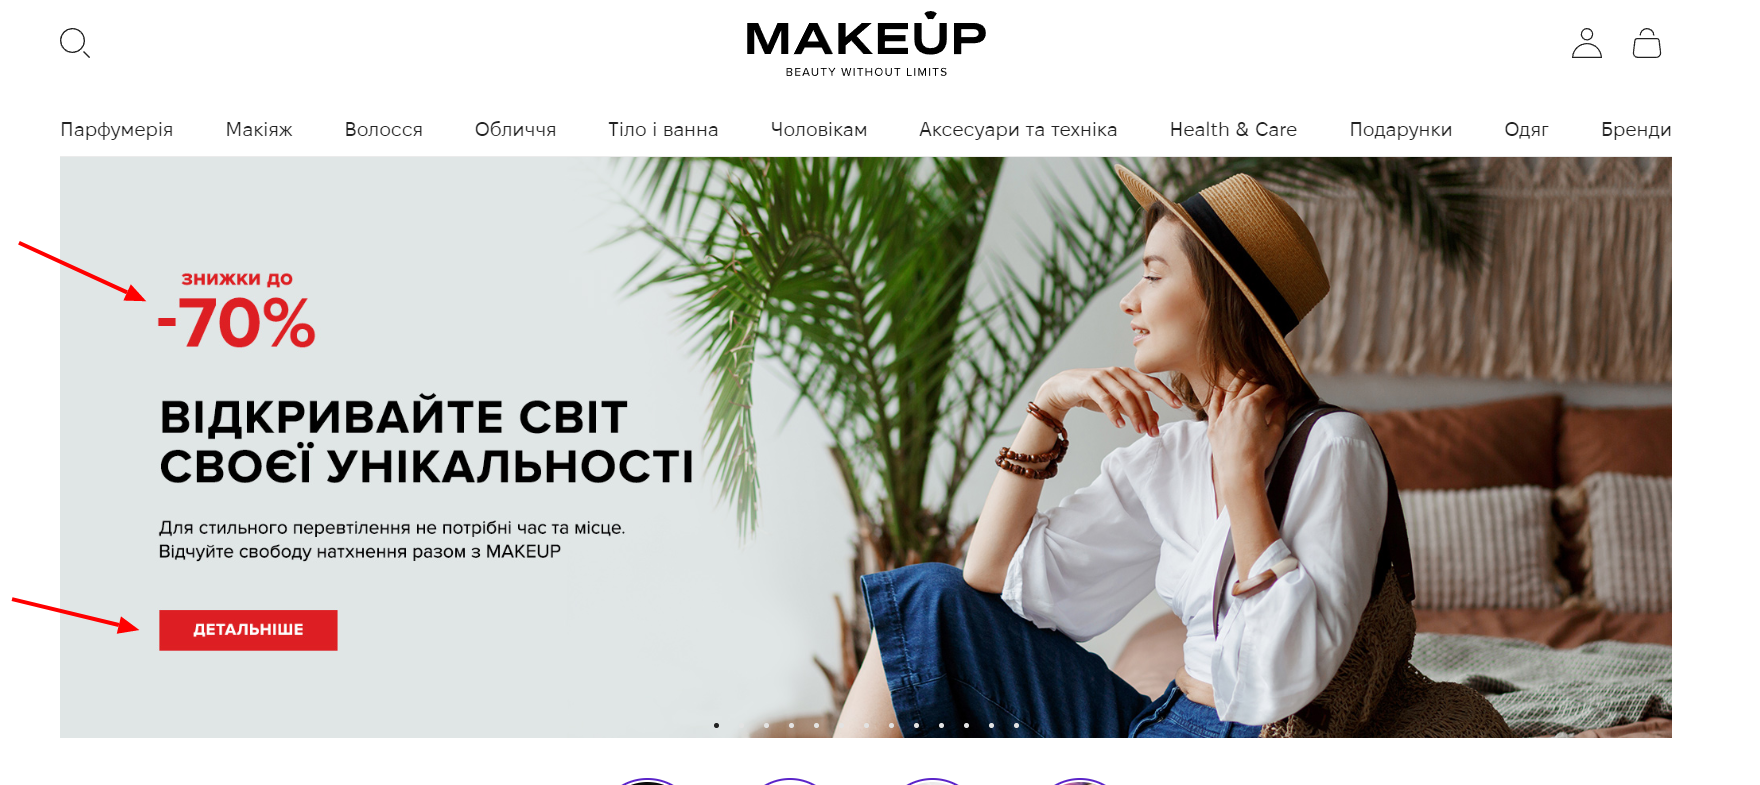 Візуальні акценти на головній сторінці сайту Makeup